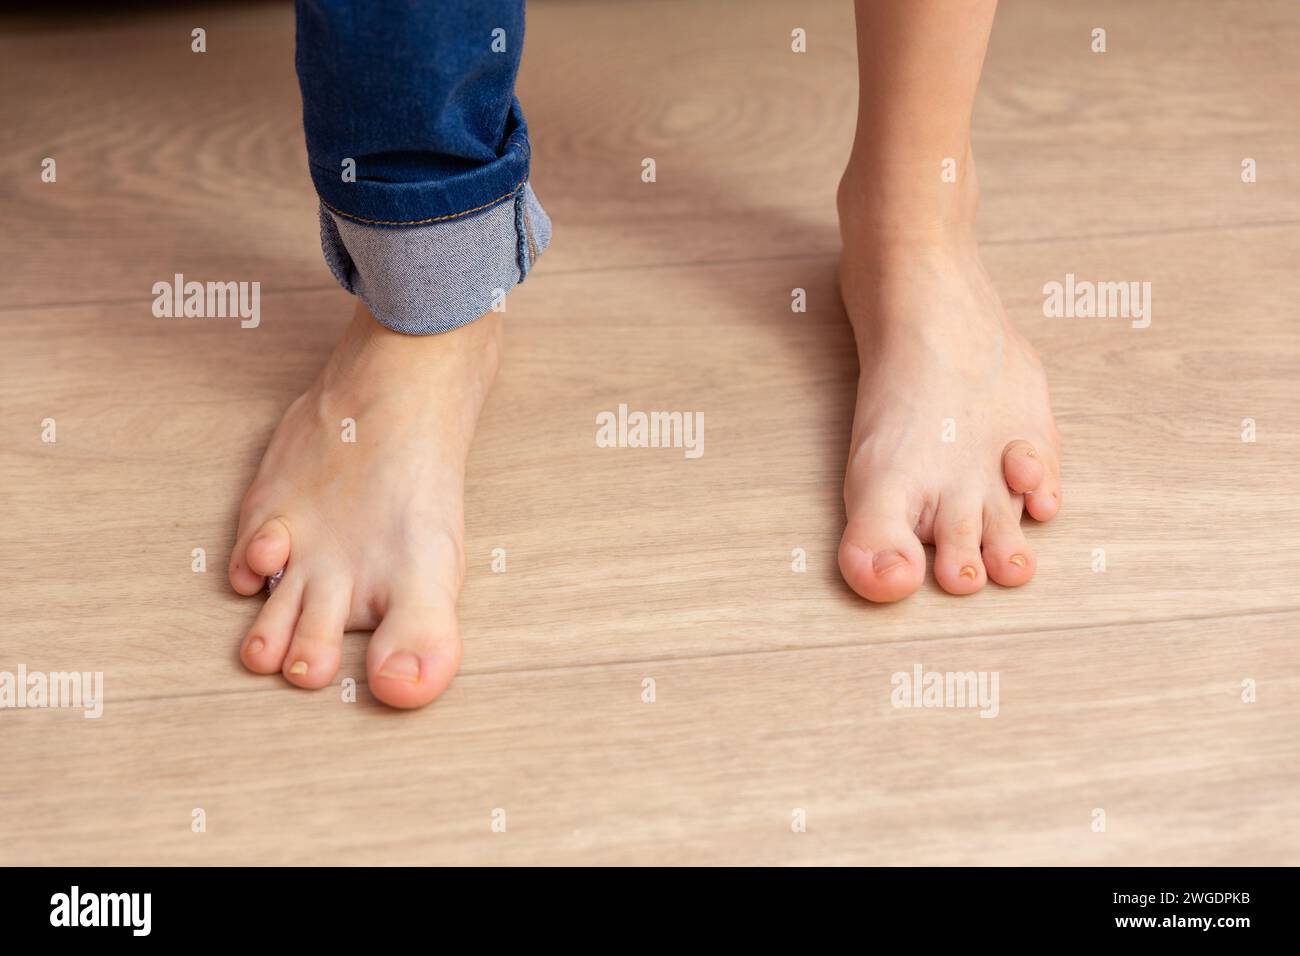 Gros plan des pieds d'une fillette de treize ans atteinte d'une malformation congénitale. Le handicap empêche la fille de marcher et de se développer normalement. Banque D'Images